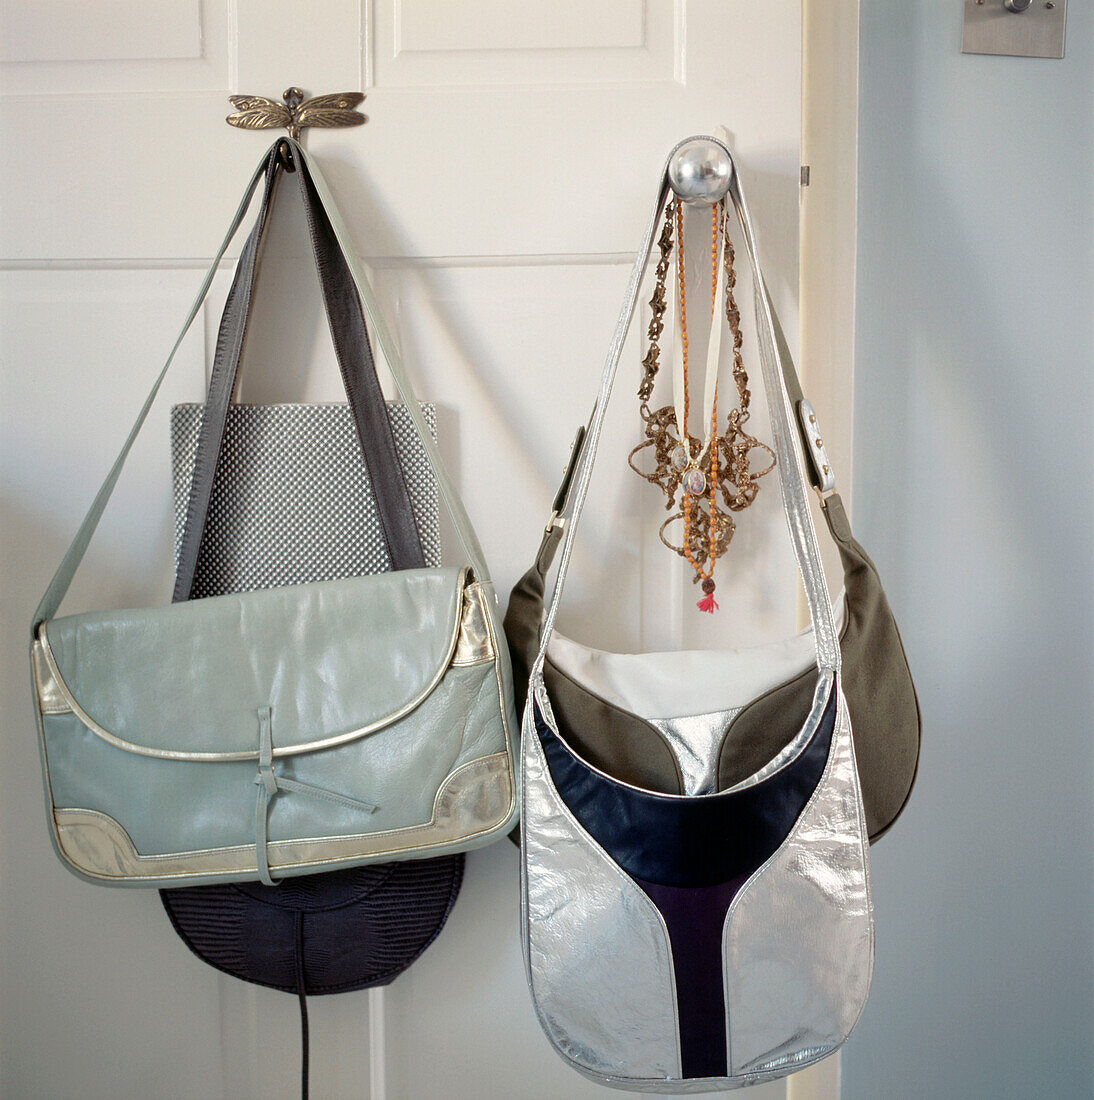 Handtaschen hängen an einem Türknauf an einer weißen Tür